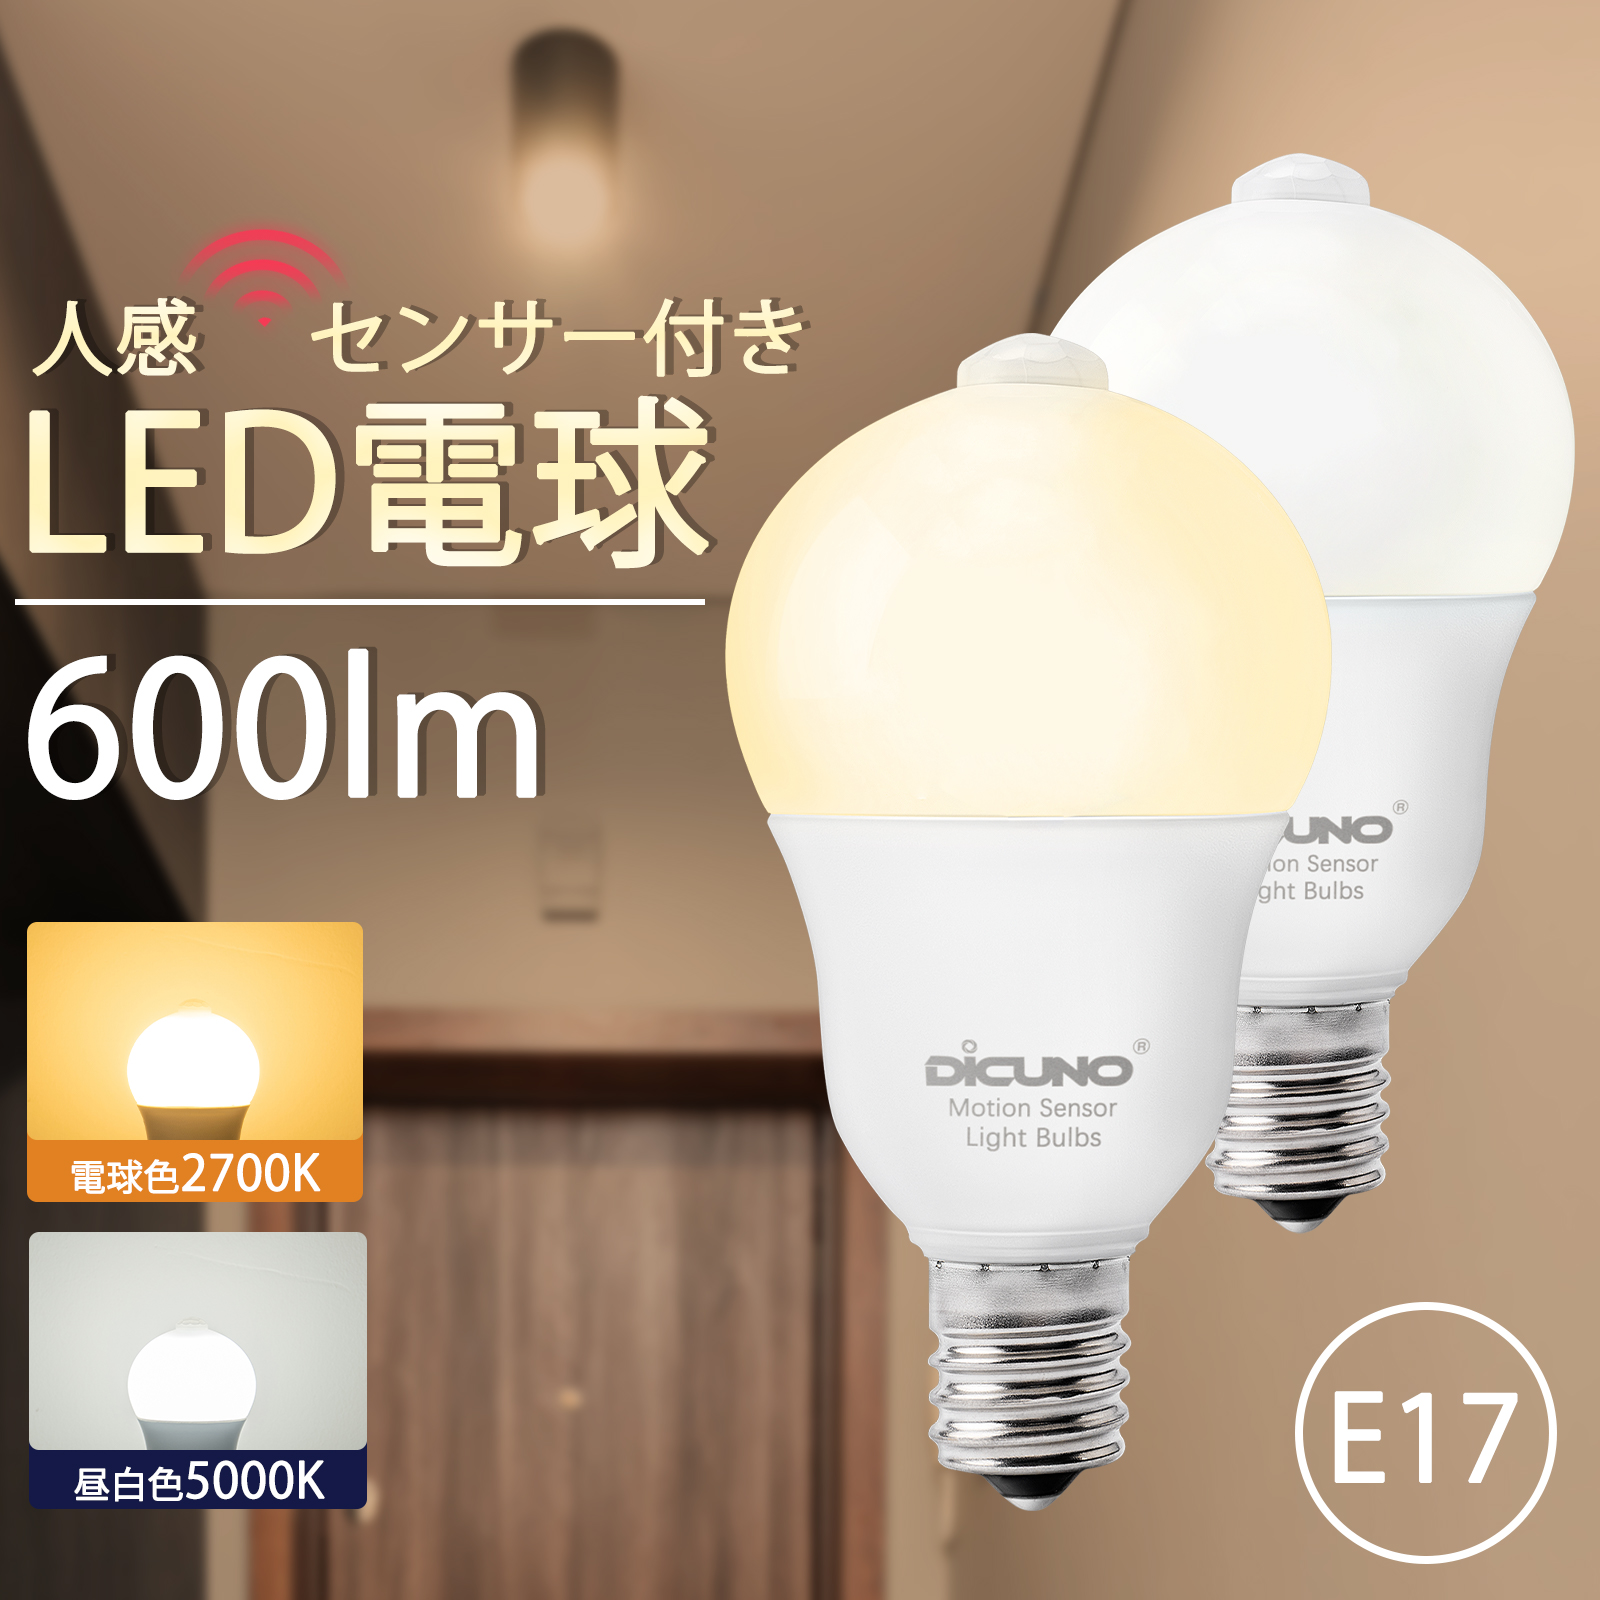 選ぶなら DiCUNO MR16 12V LED電球 GU5.3口金 調光可能 50W形ハロゲン